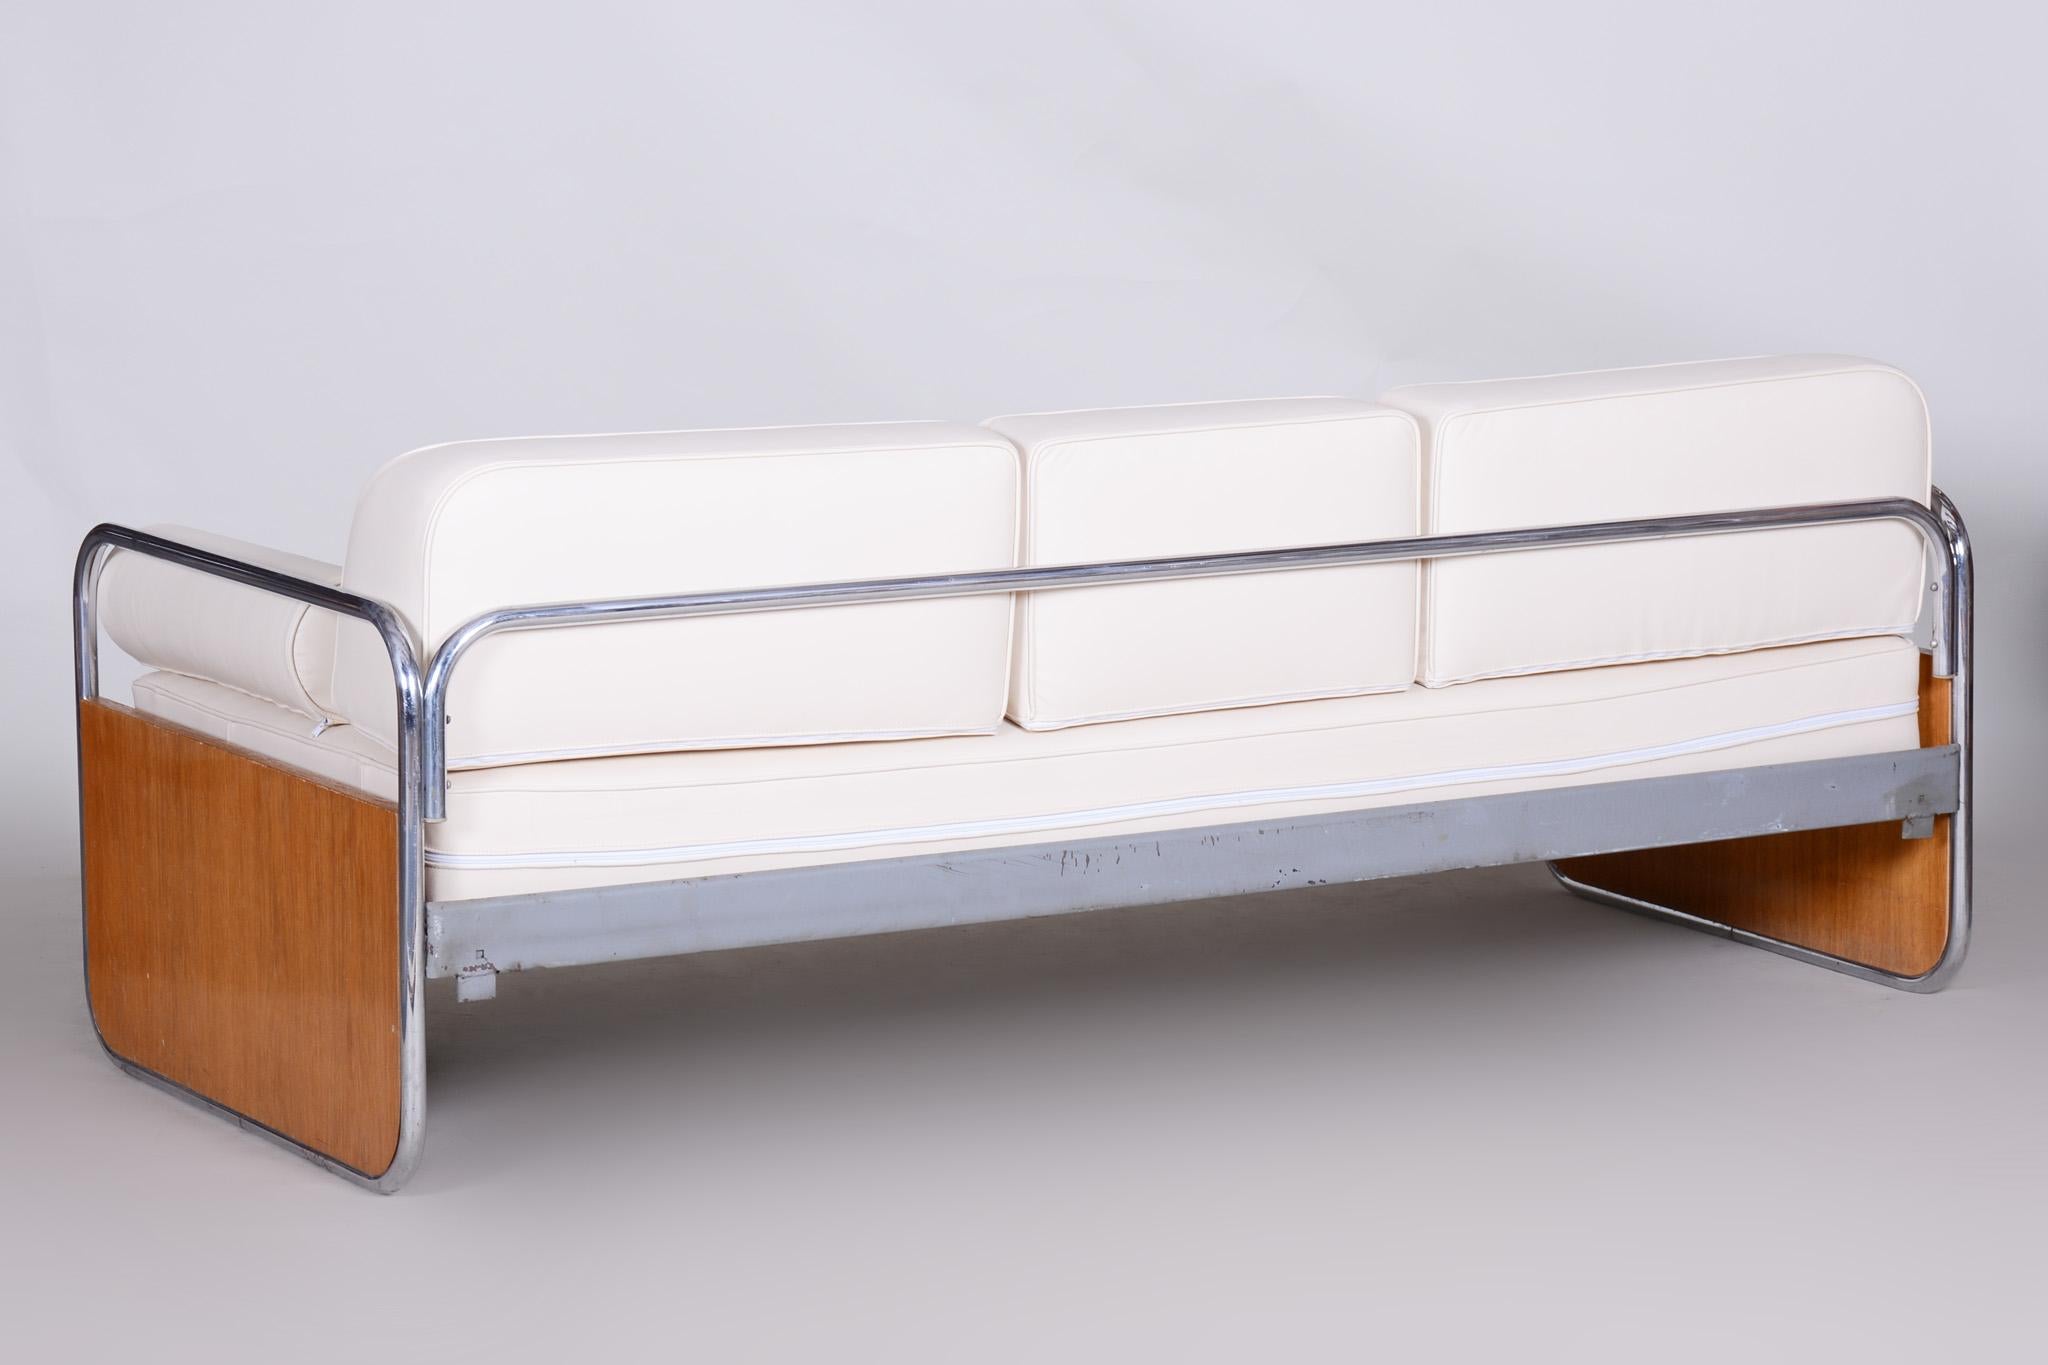 Canapé de style Bauhaus avec structure tubulaire en acier chromé.
Fabriqué par Hynek Gottwald dans les années 1930.
L'acier tubulaire chromé est en parfait état d'origine.
Nouvelle sellerie
Source : Tchèque (Tchécoslovaquie).